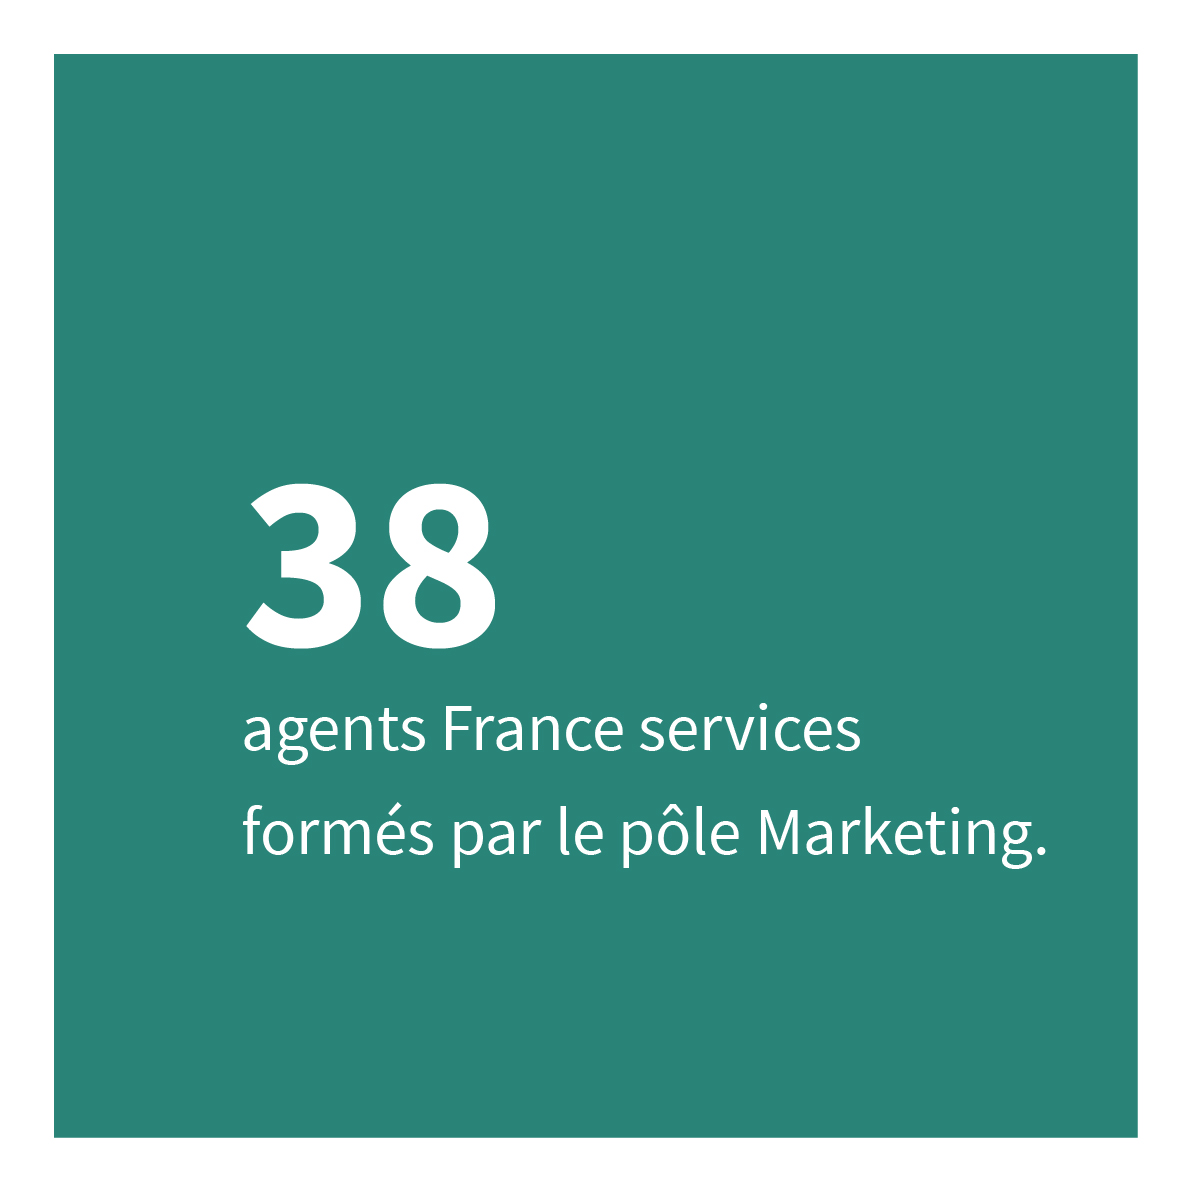 38 agents France services formés par le pôle Marketing.